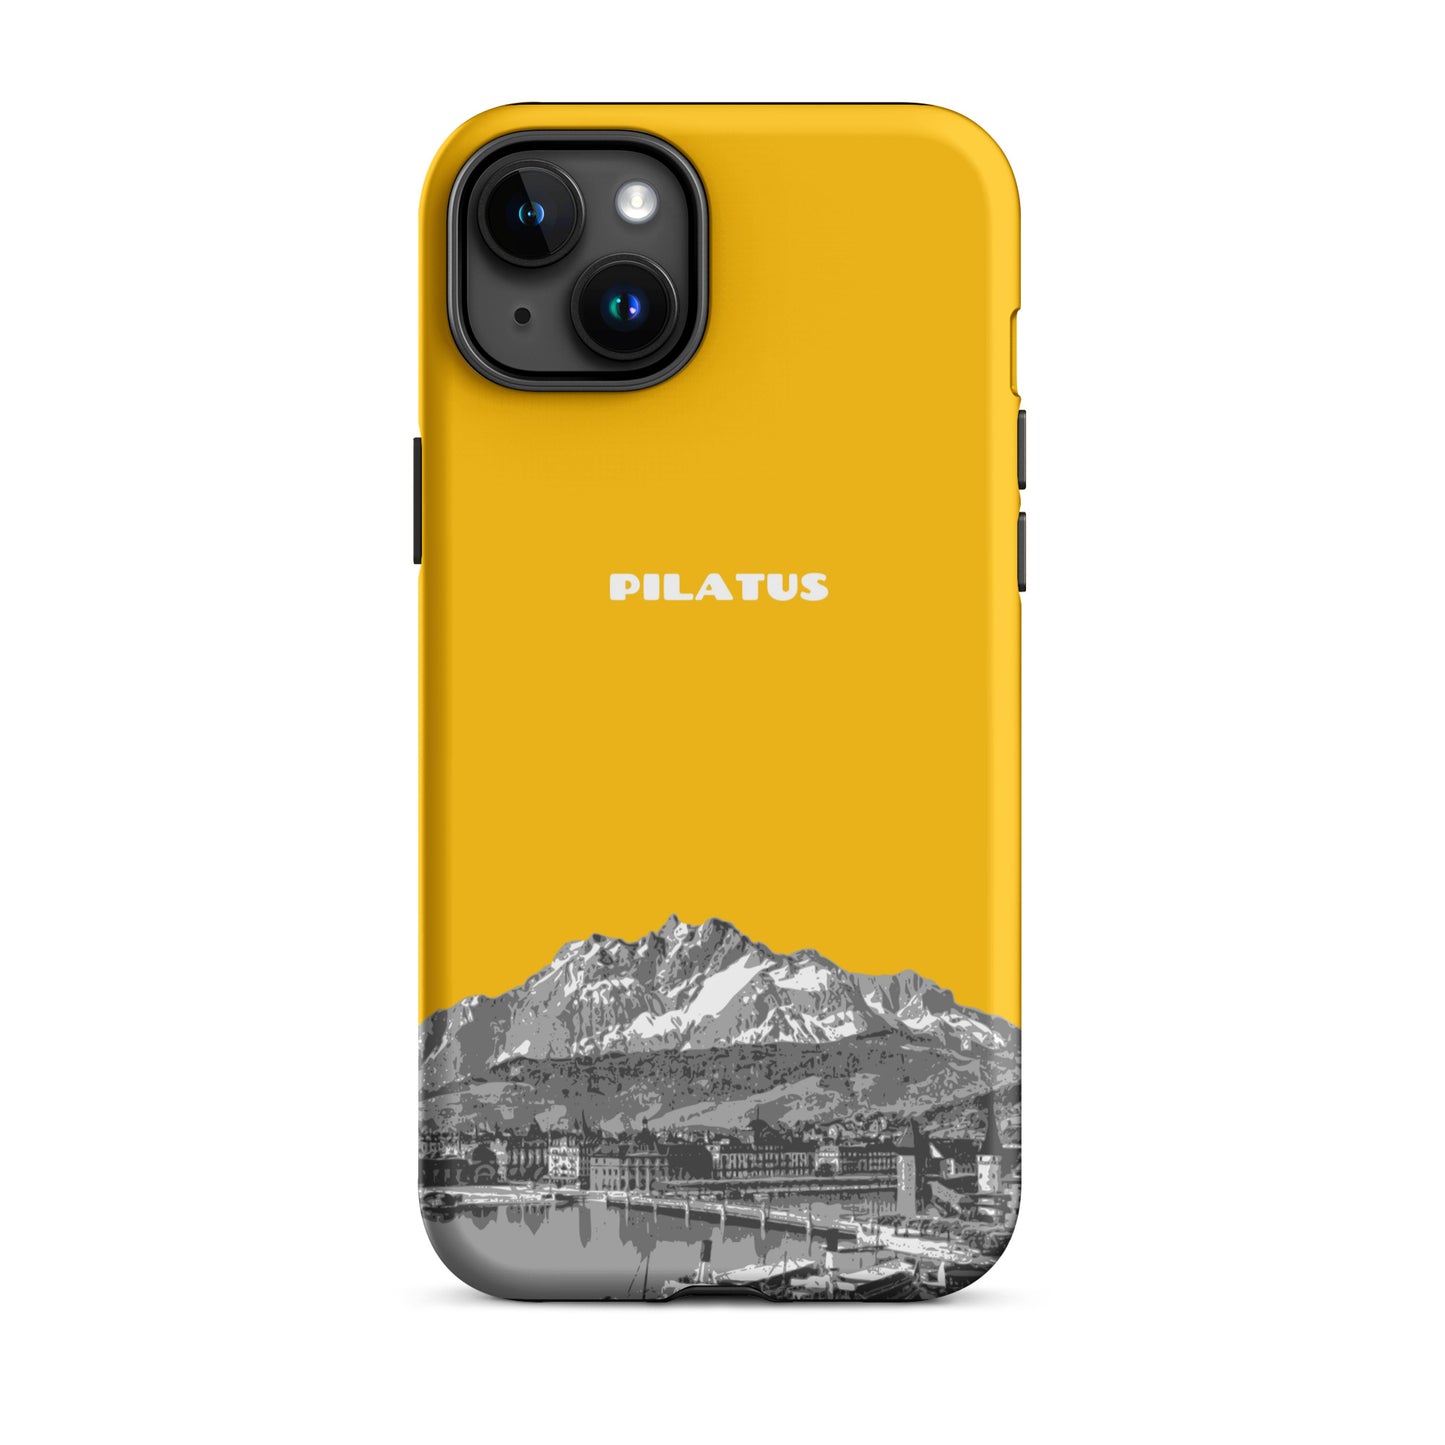 iPhone Case - Pilatus - Goldgelb